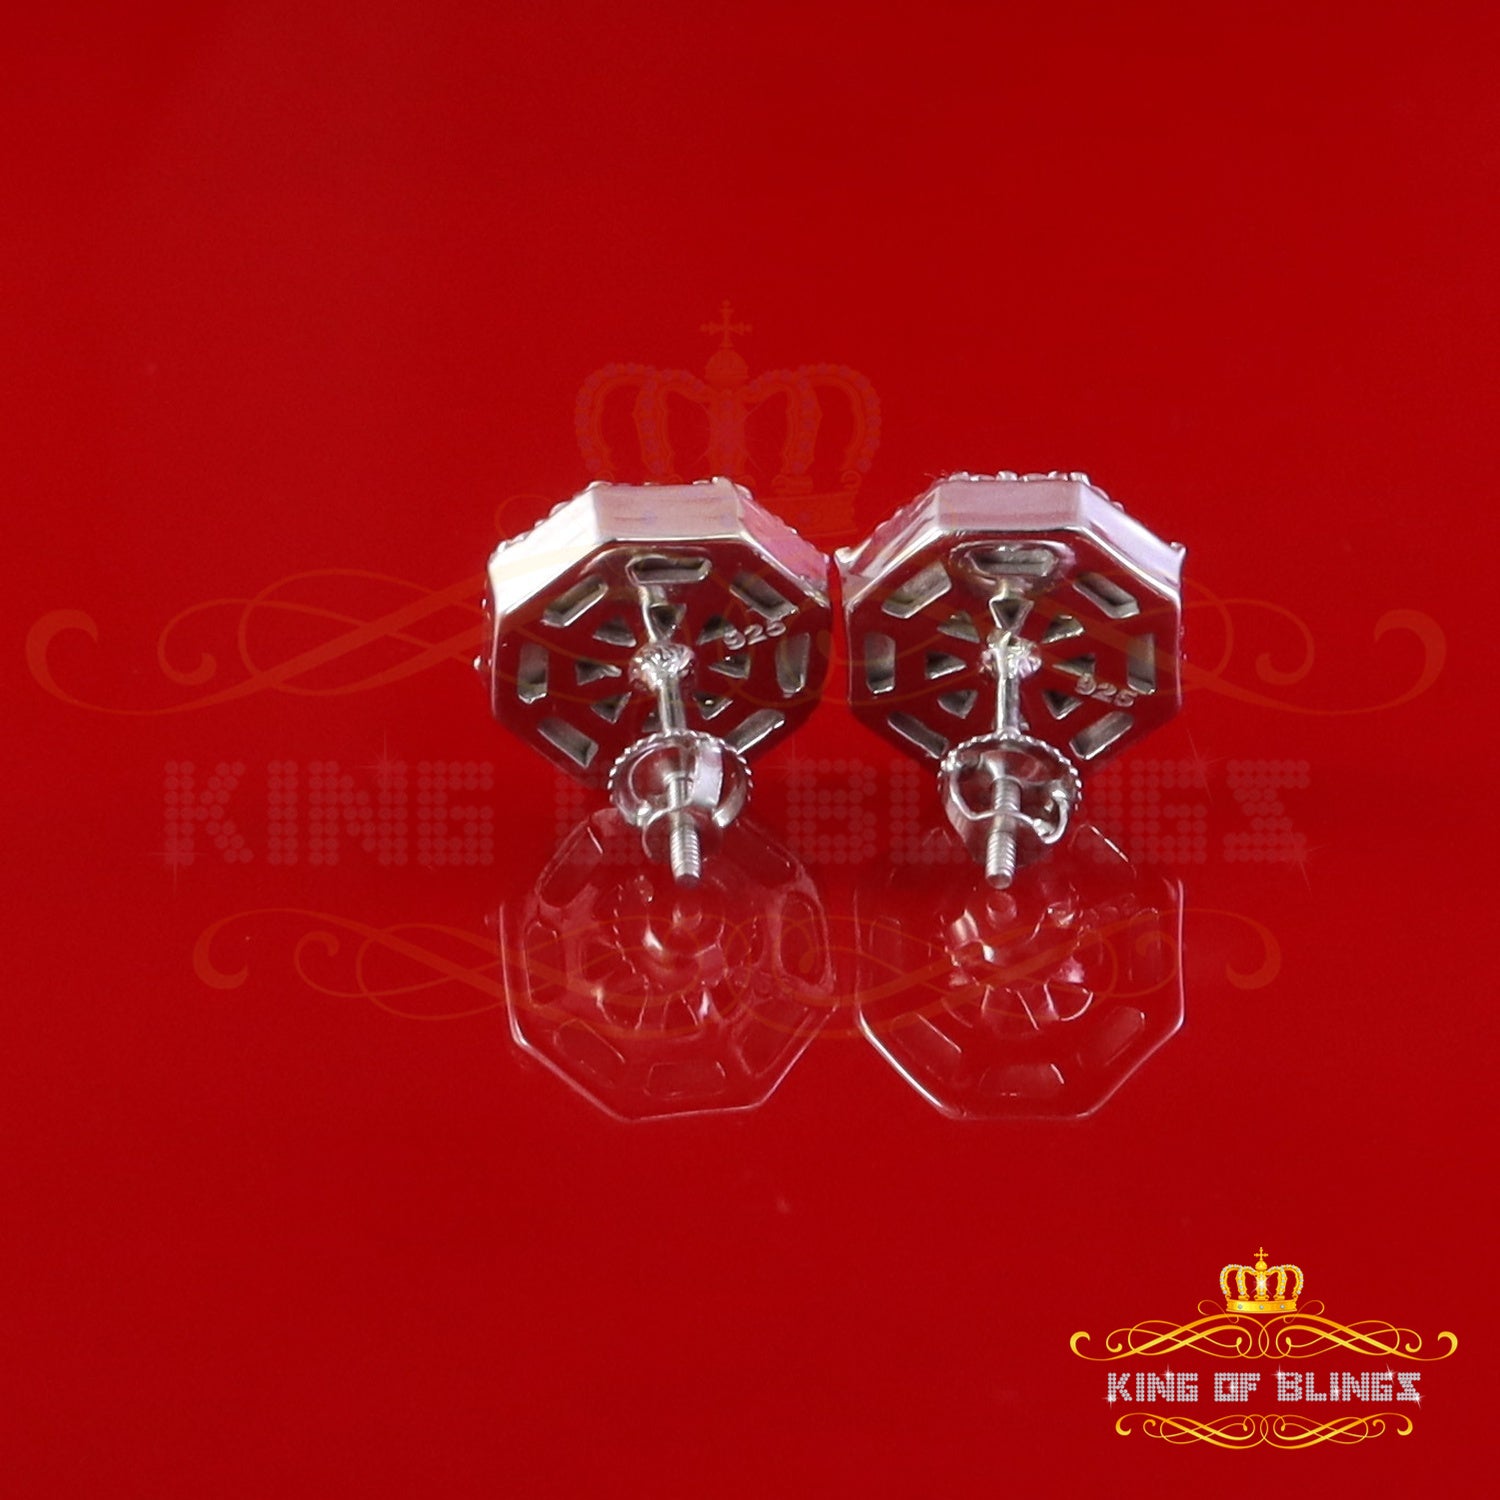 King of Bling's 925 White Silver 1.00ct VVS 'D' Moissanite Octagon Stud Earring Men's/Womens King of Blings